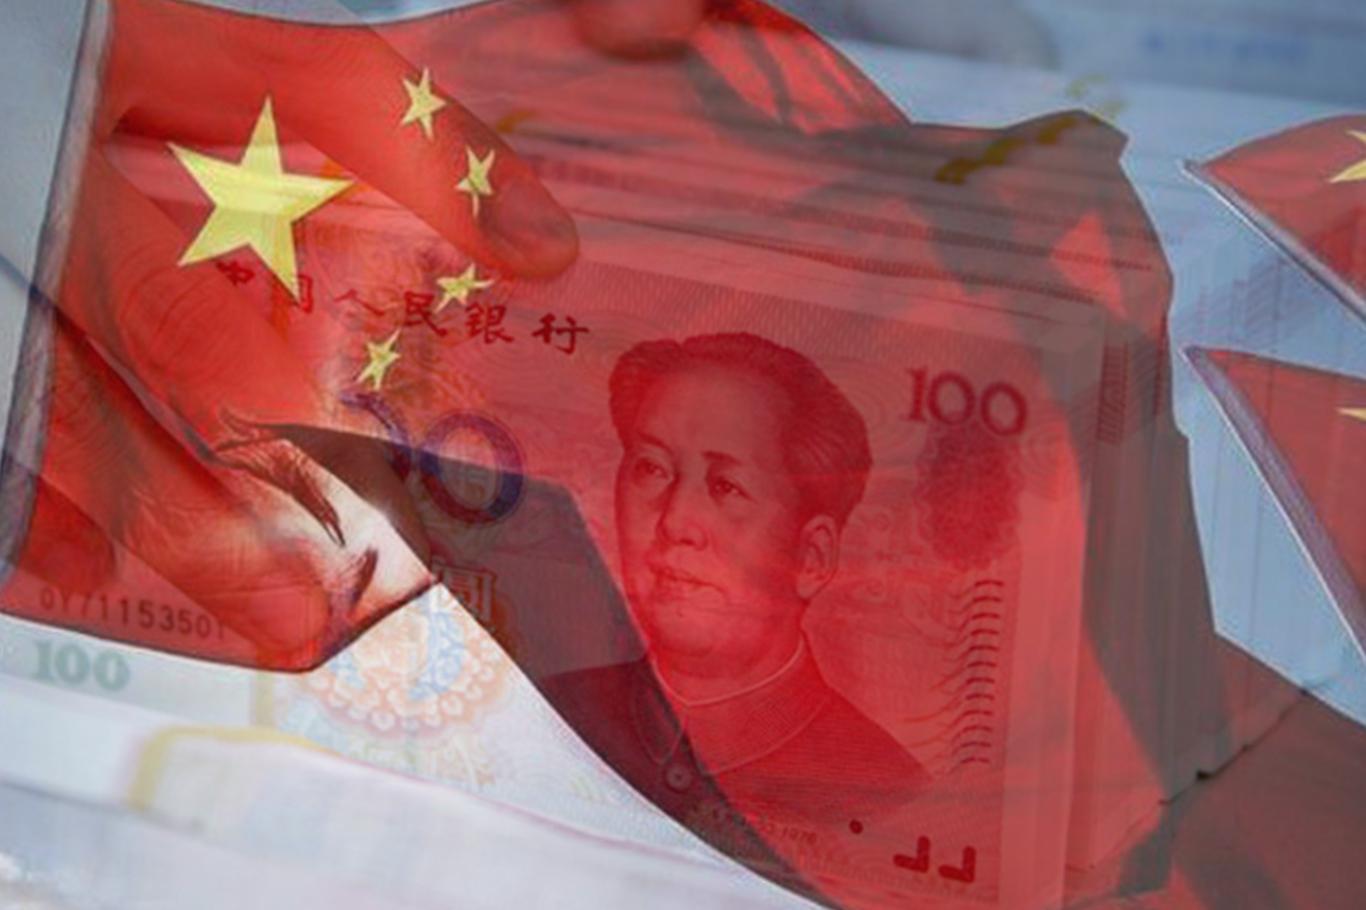 الصين المناهضة للرأسمالية وزعت قروضا أكثر من صندوق النقد الدولي!